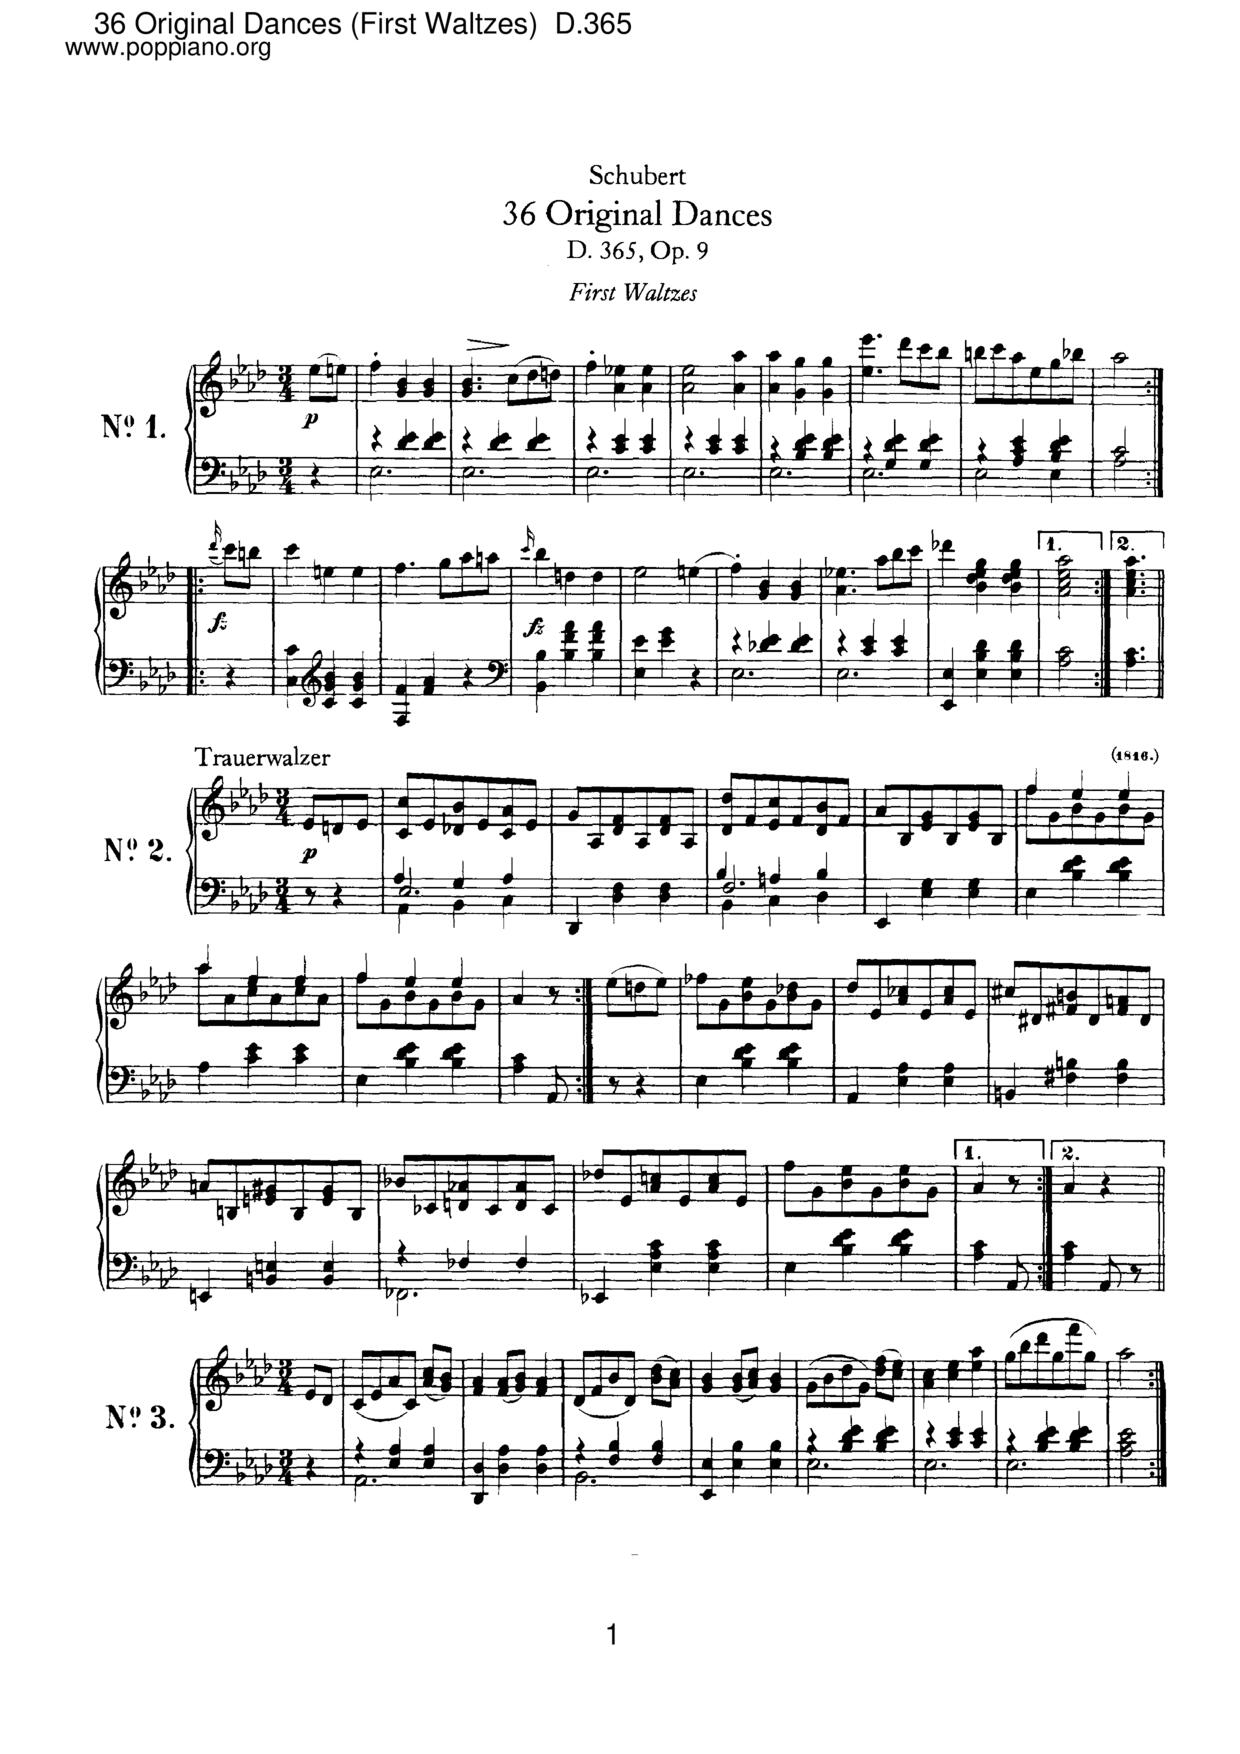 36 Original Dances (First Waltzes), D.365 (Op.9)琴谱